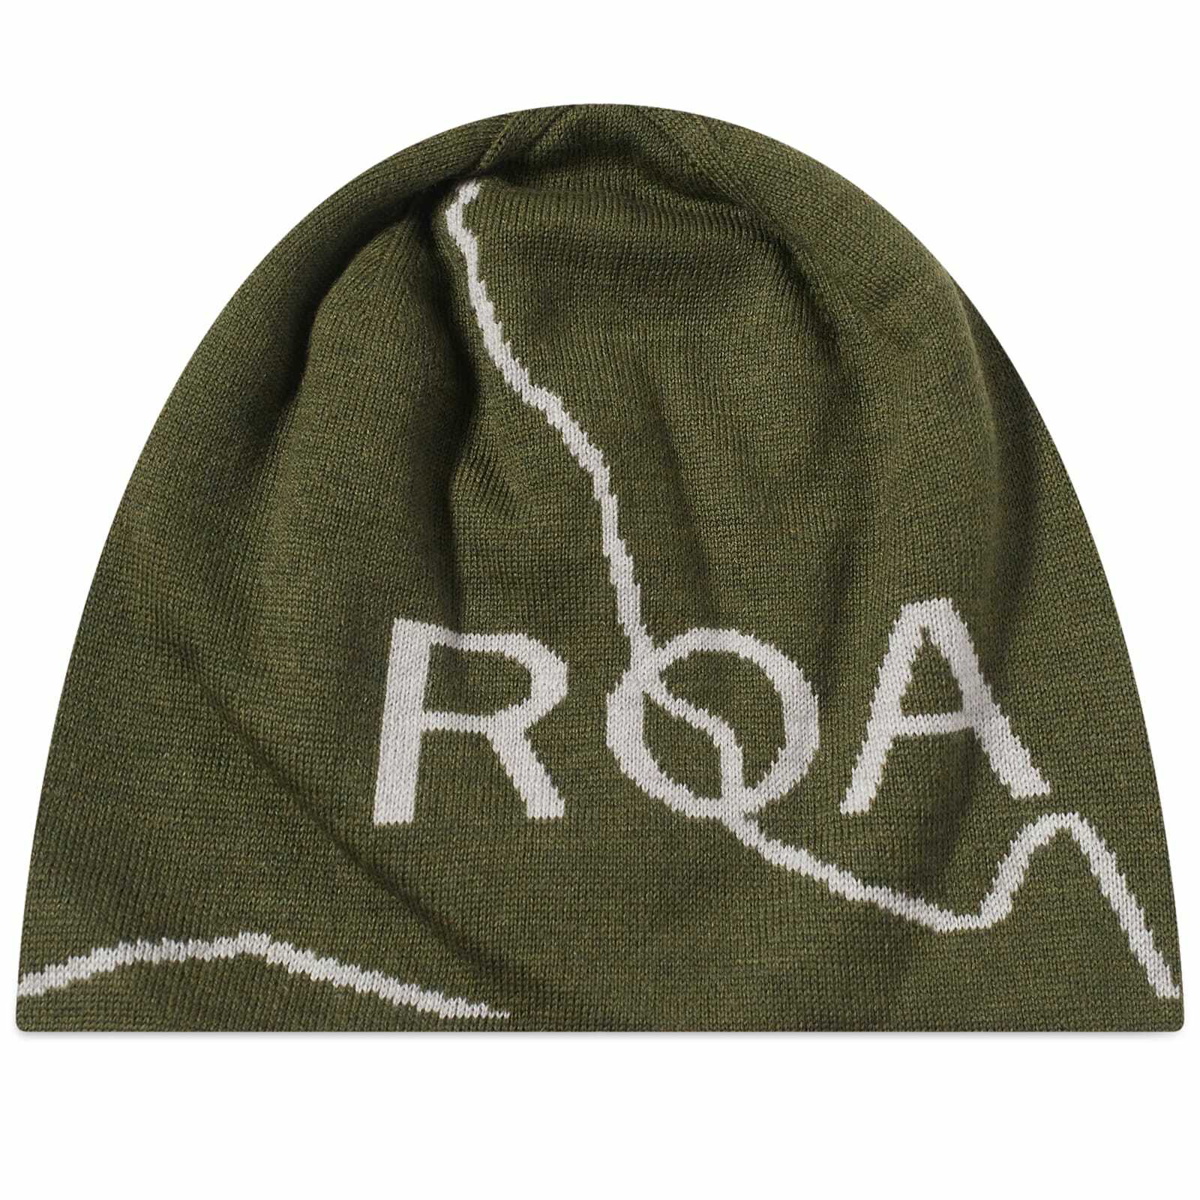 ROA Logo Beanie - Dark Green